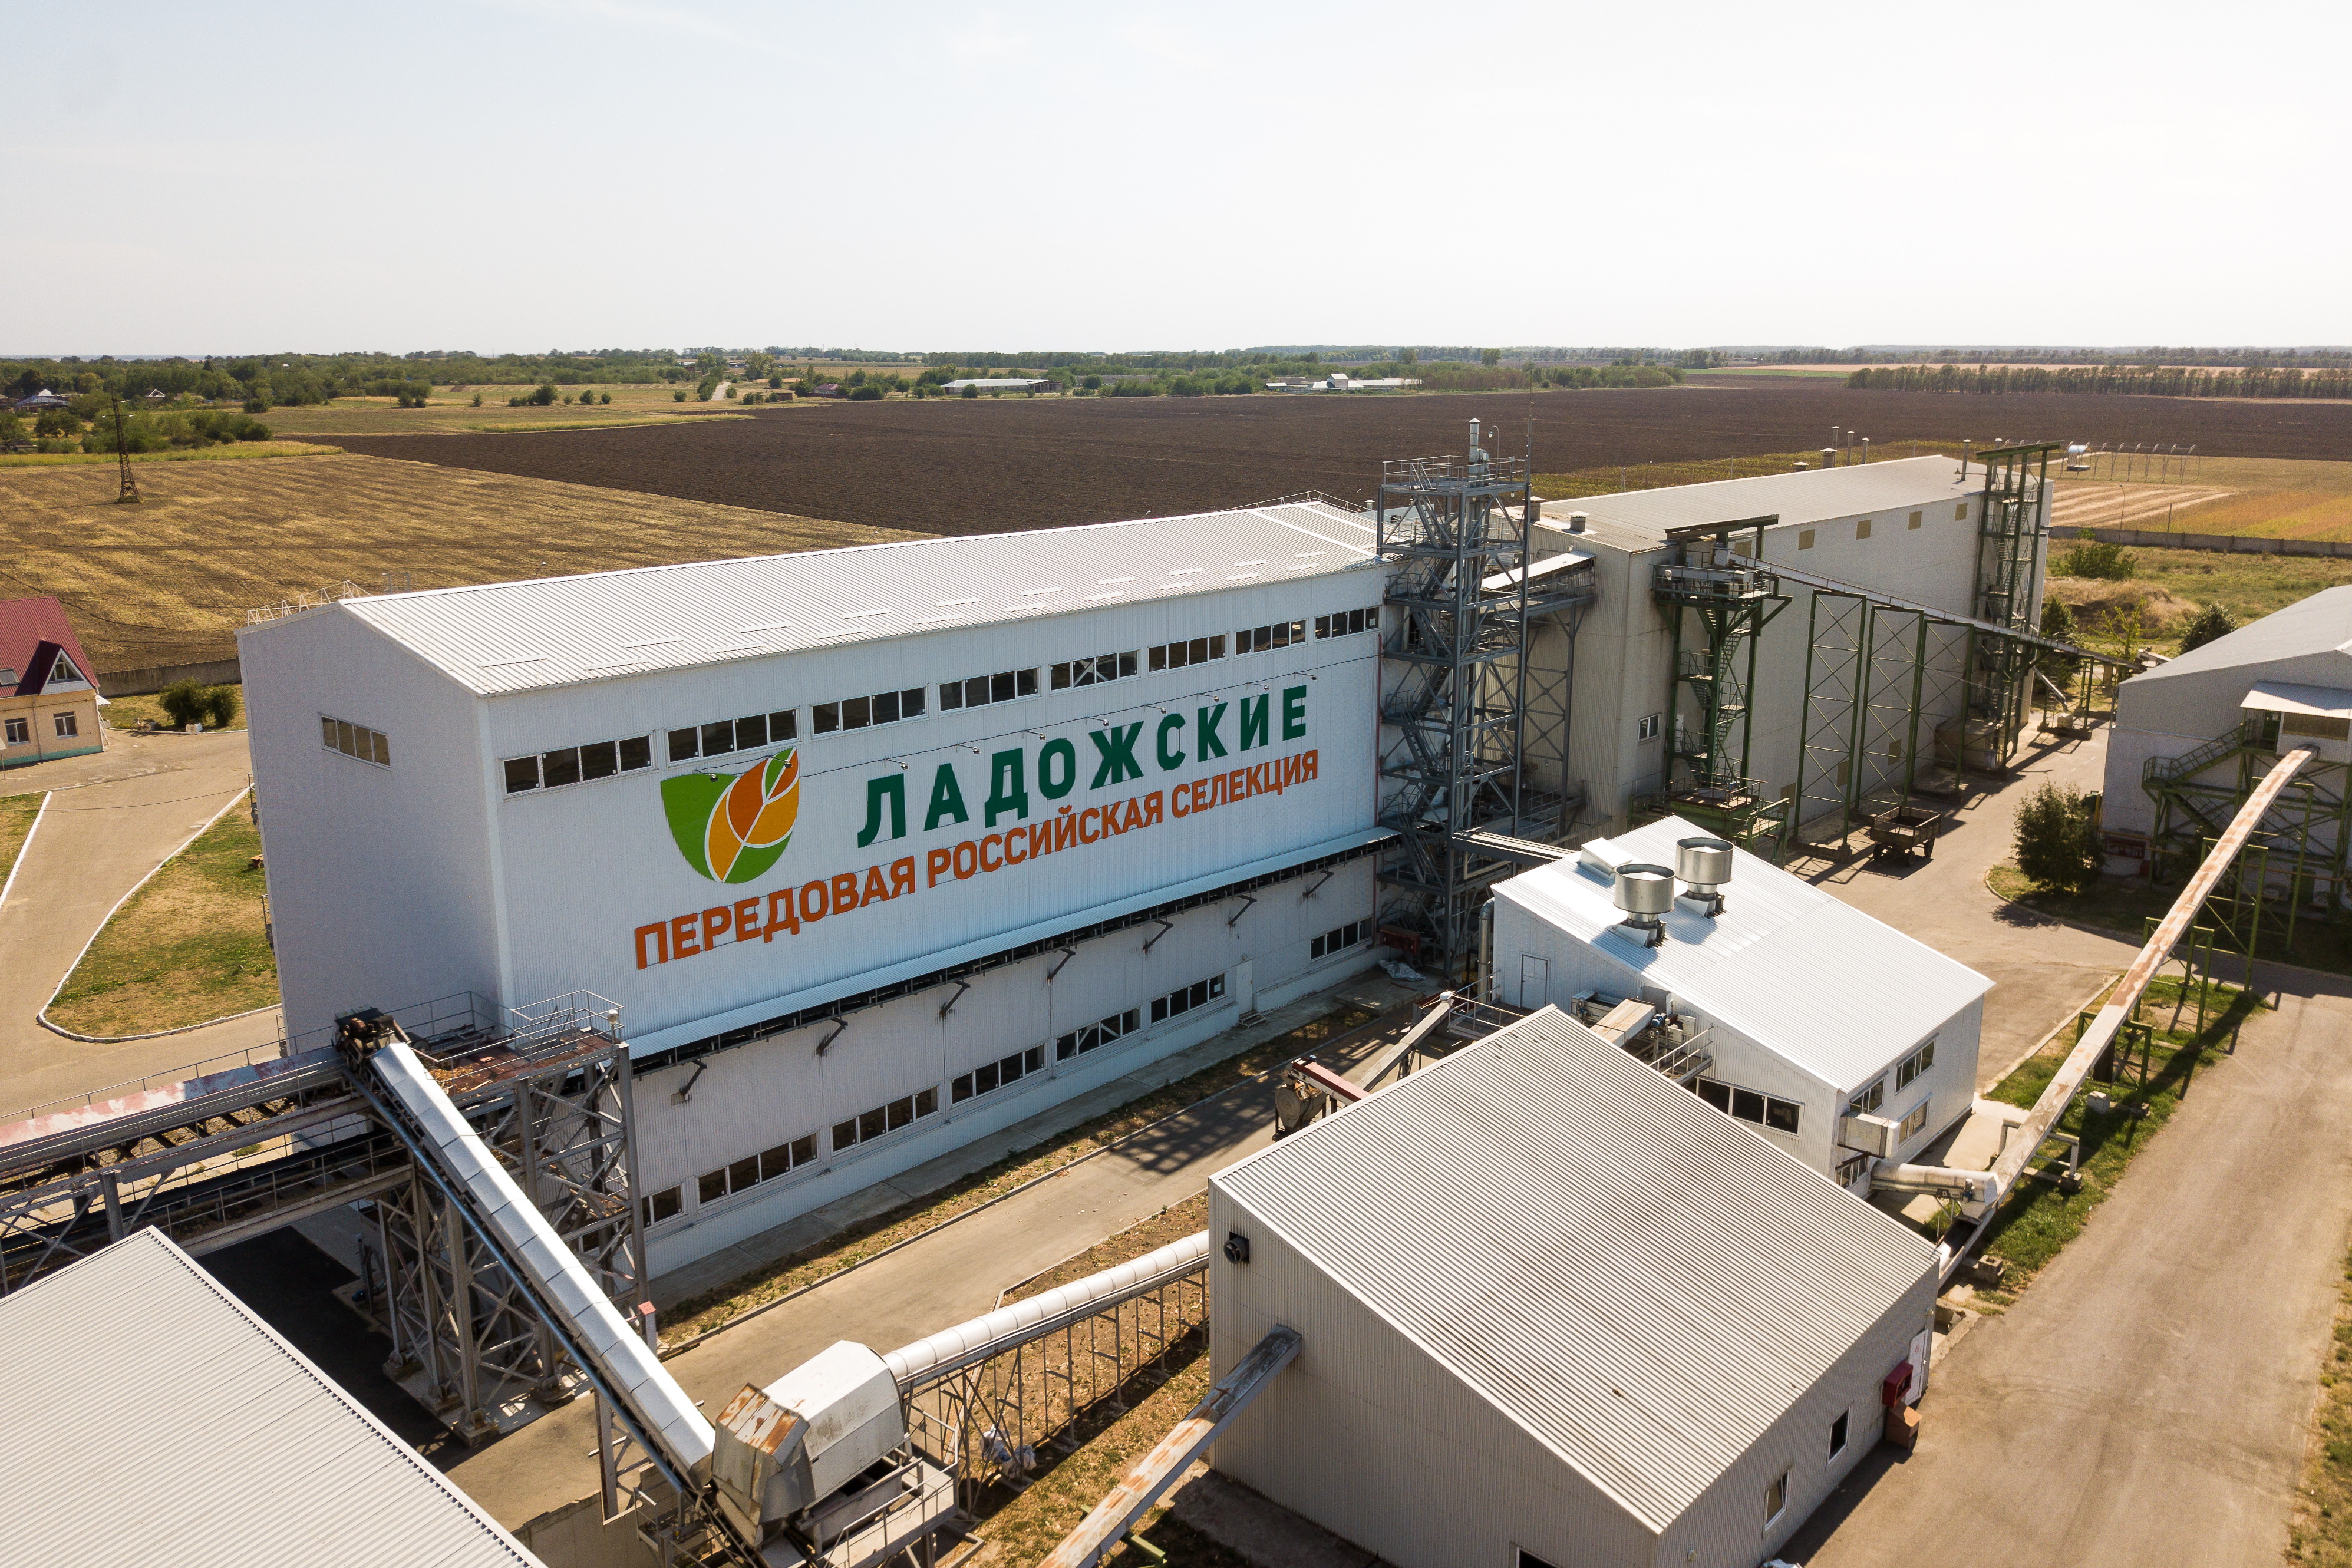 Ладожский кукурузокалибровочный завод.jpg